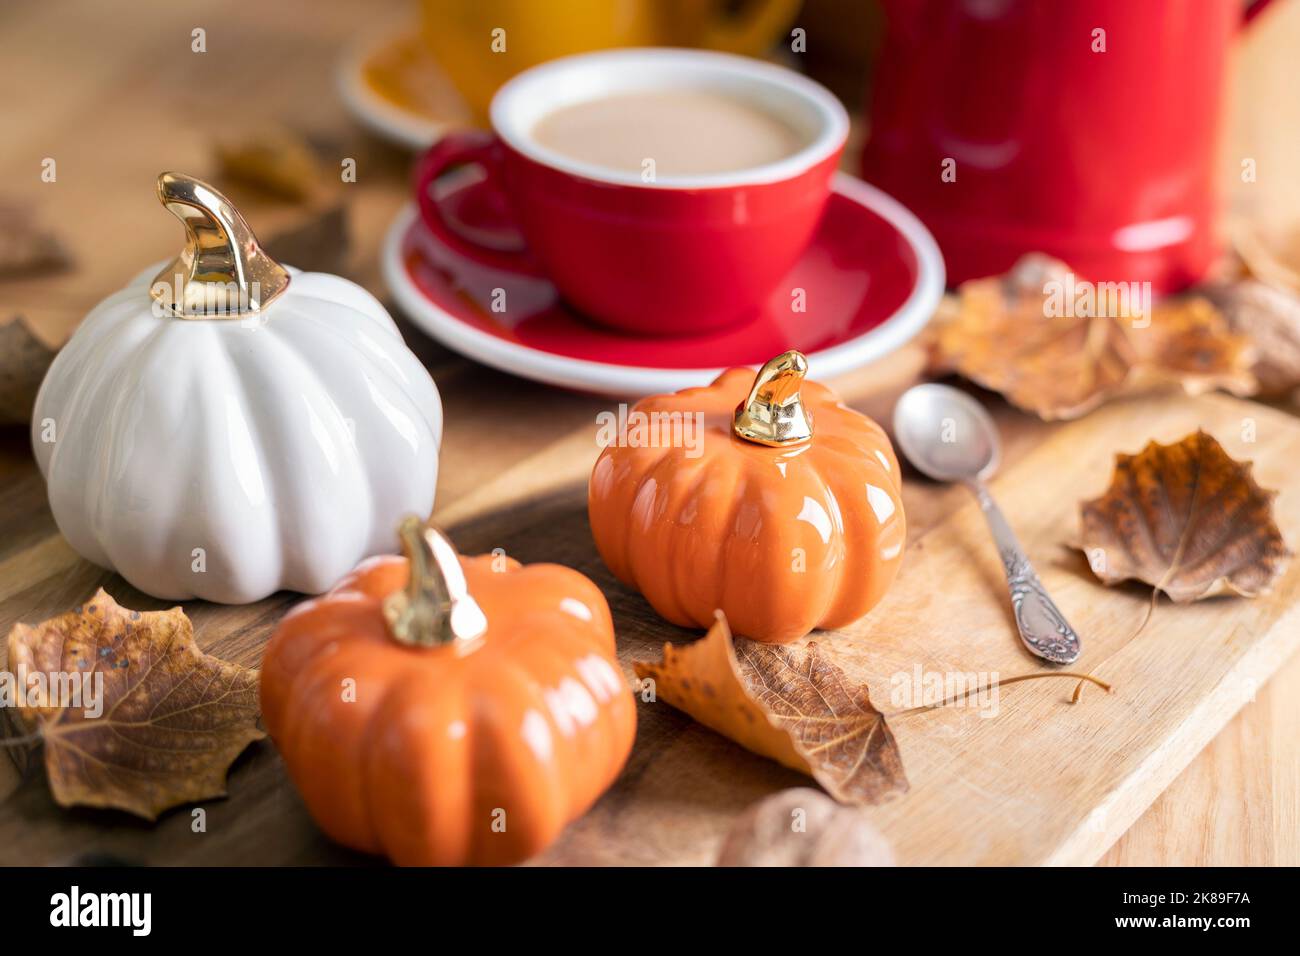 magnifique fond d'automne avec citrouilles et une tasse de café. décoration d'automne à l'intérieur Banque D'Images